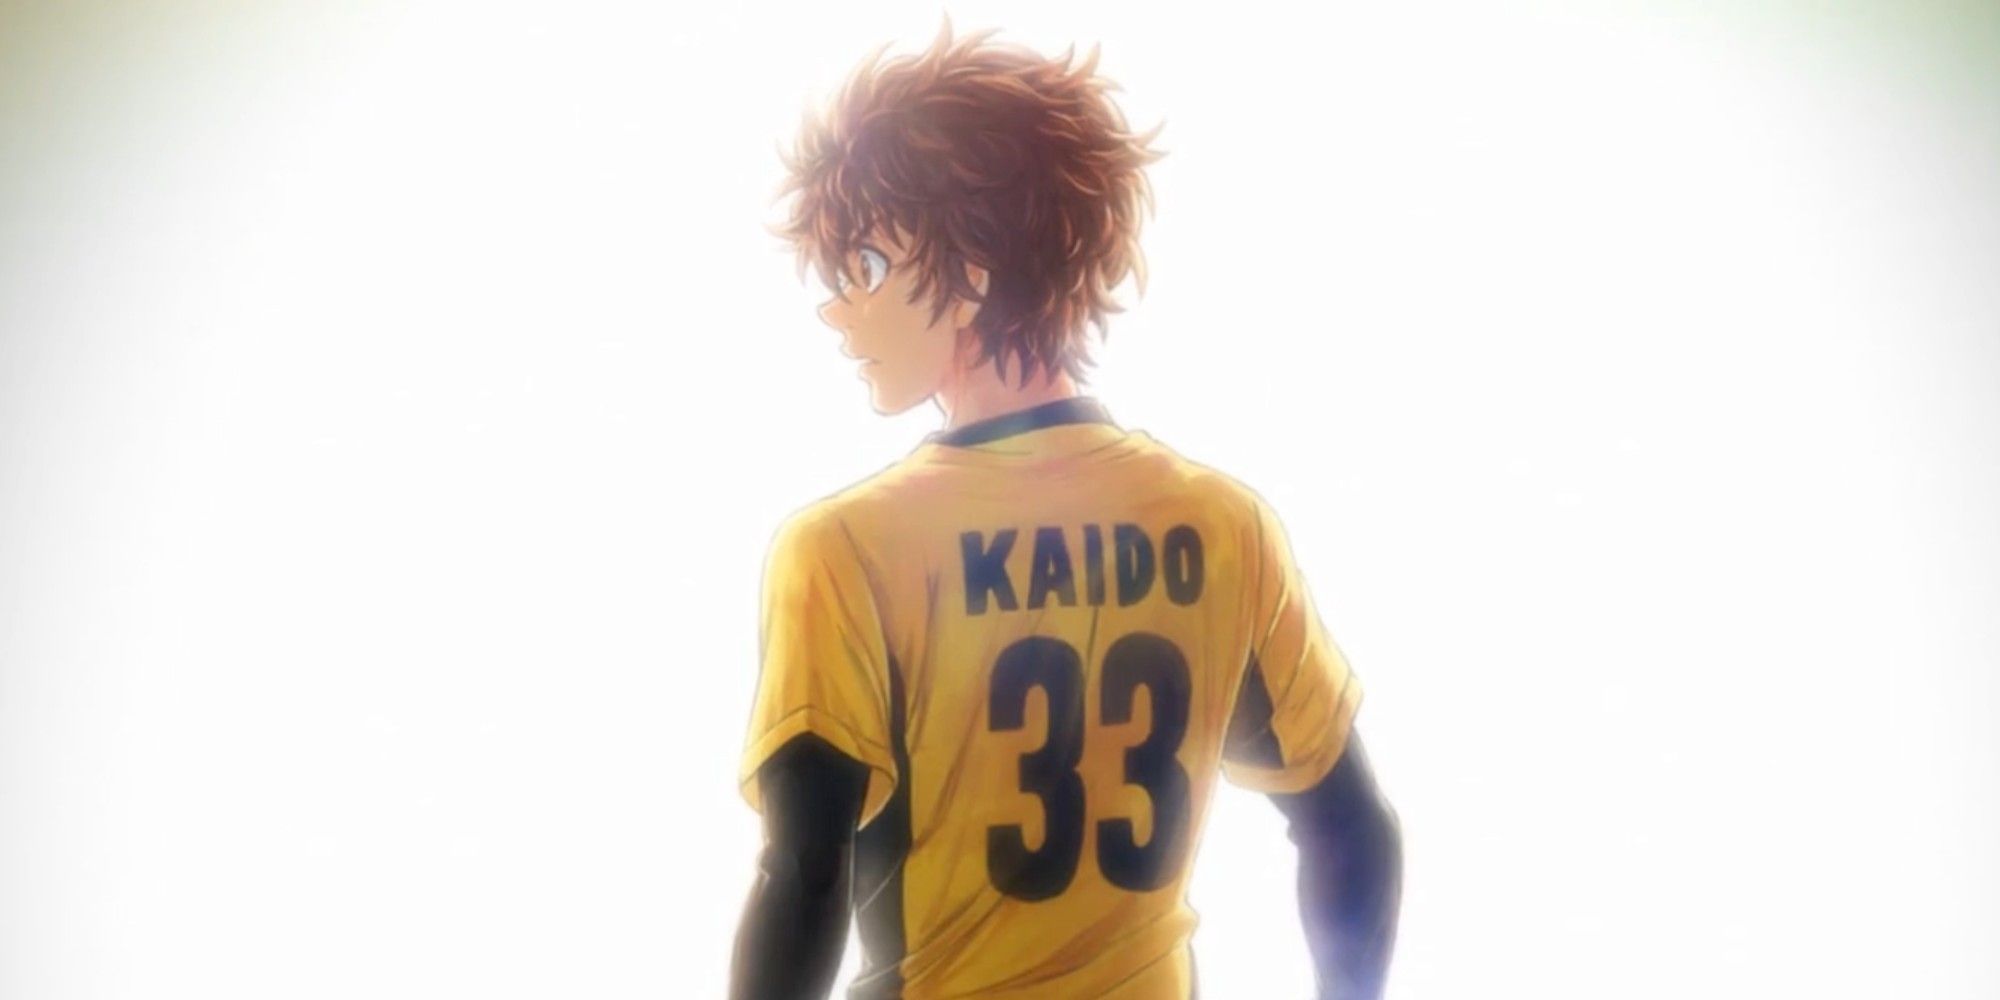 Aoashi: Ashito's Biggest Ultimatum Yet Could Decide His Future in Soccer